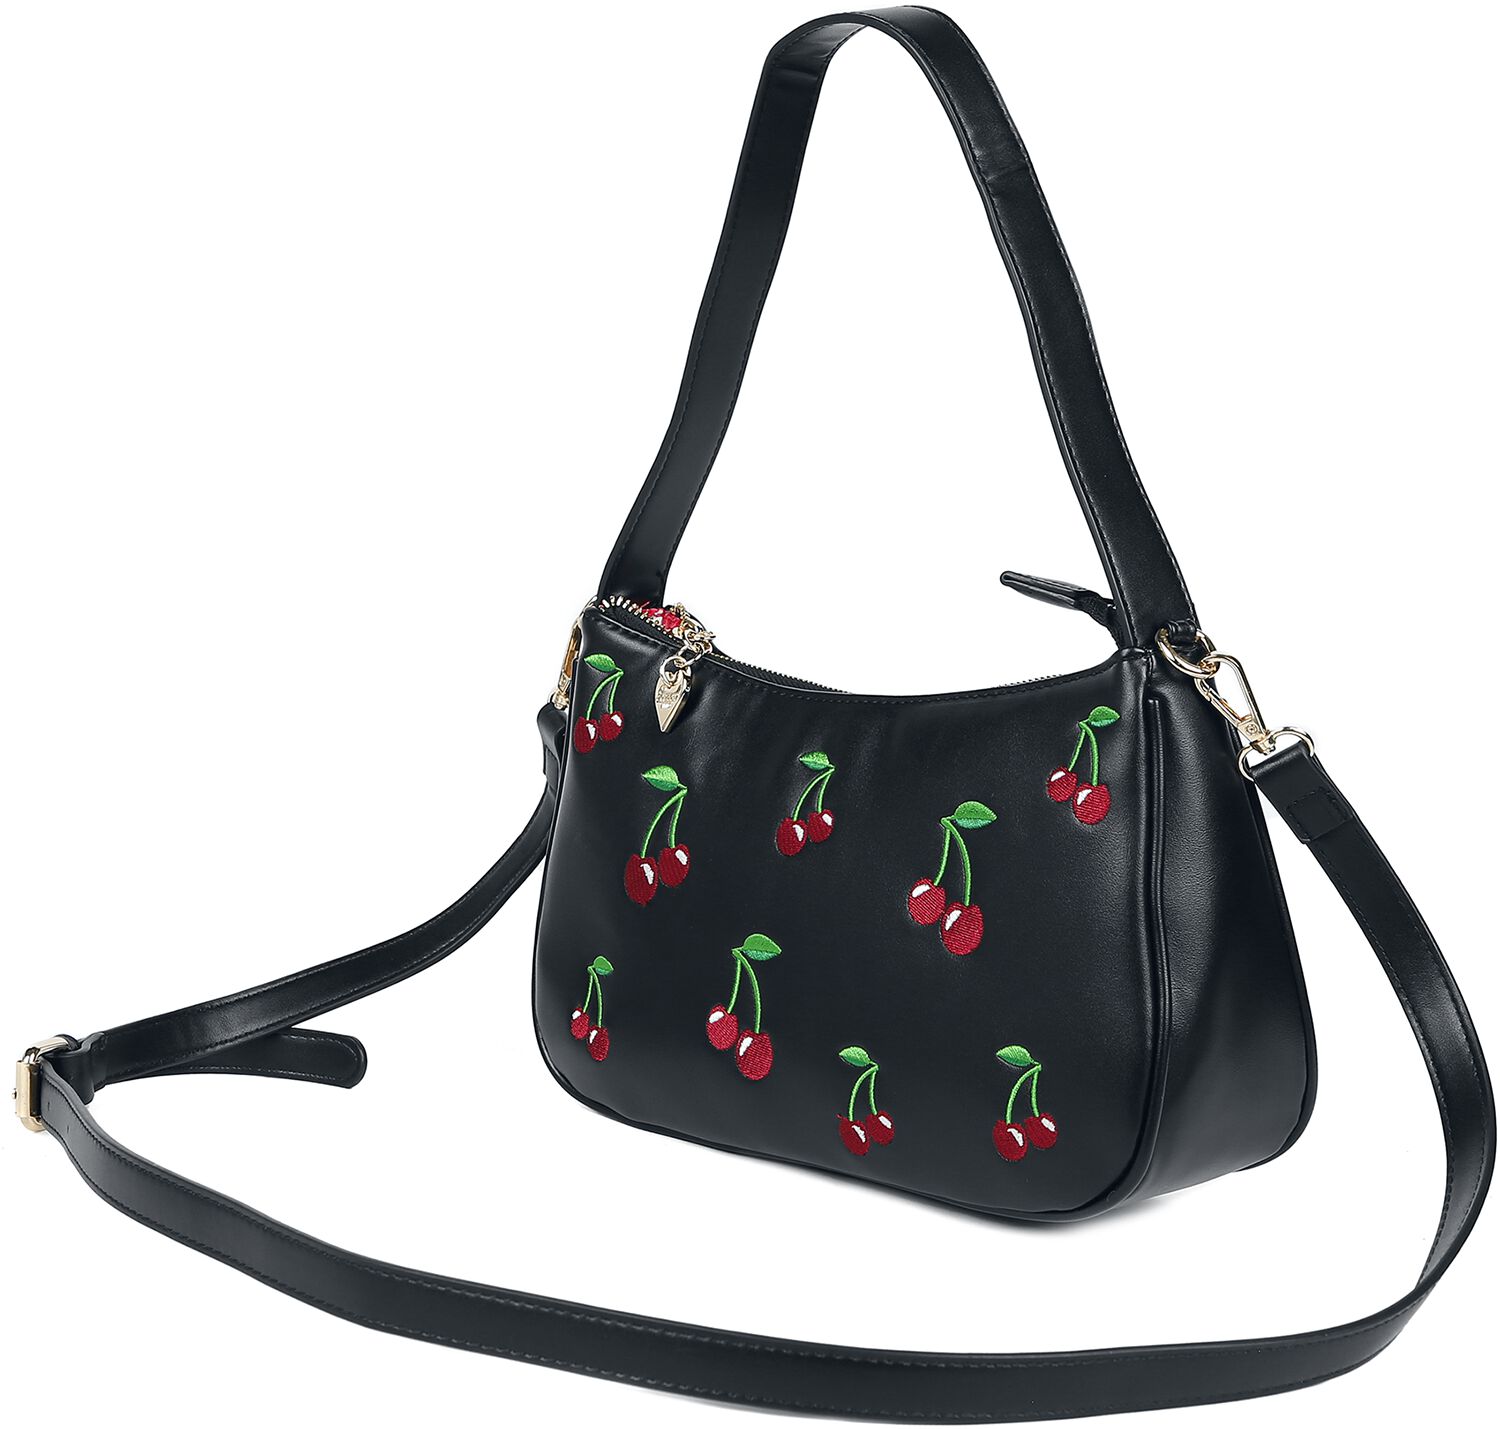 Banned Retro Handtasche - Wild Cherry - für Damen - schwarz/multicolor